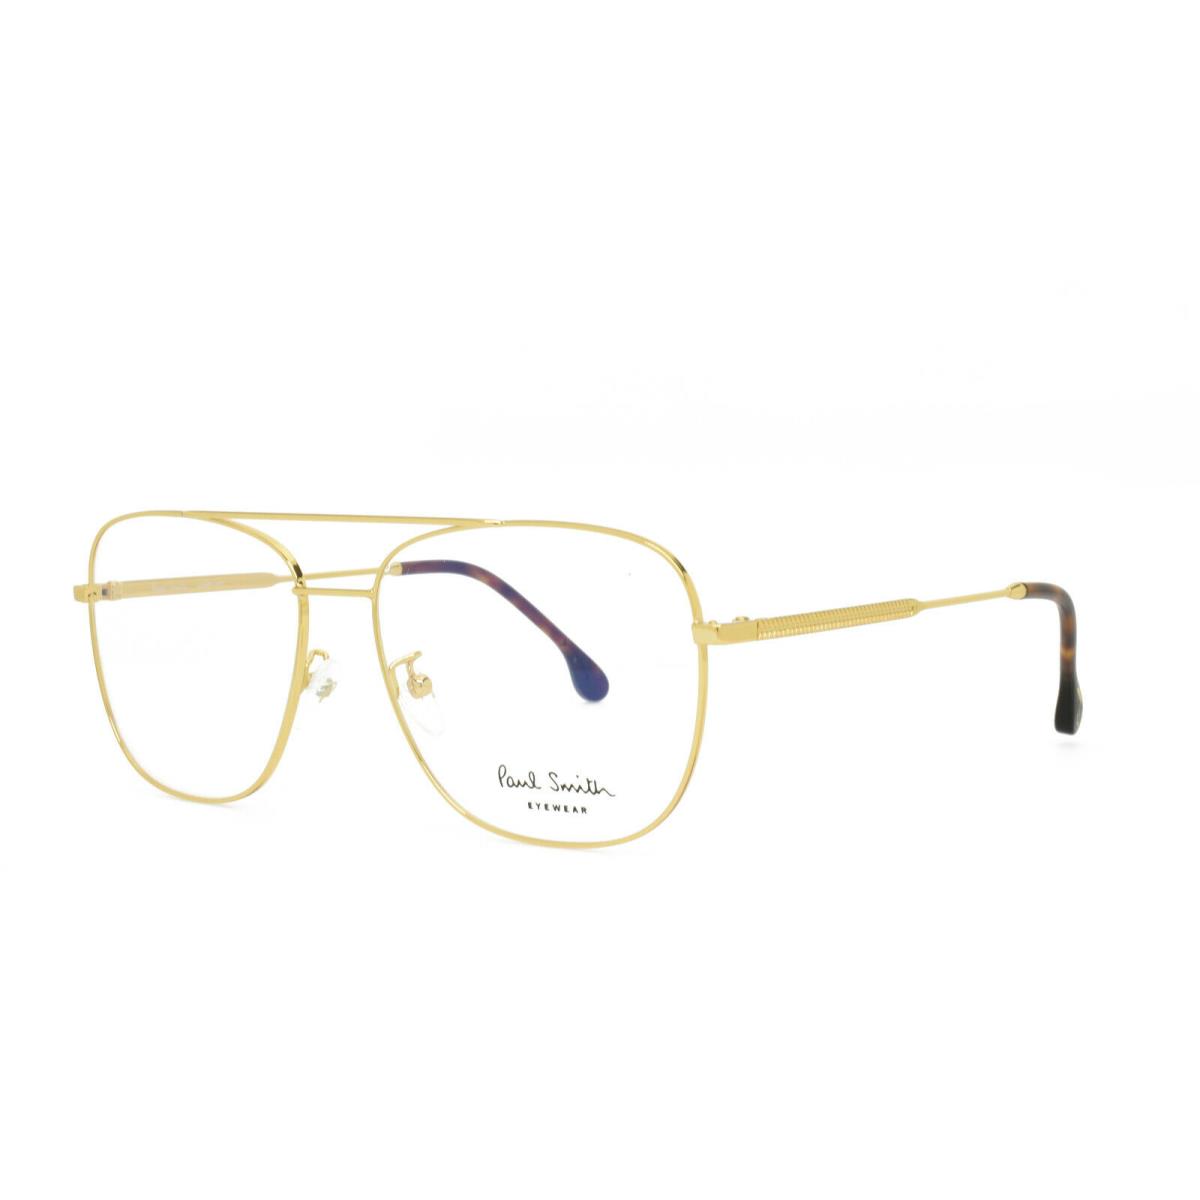 Paul Smith Avery V2 Aviator Eyeglasses Frames Gold 58-15-145 - Frame: Gold